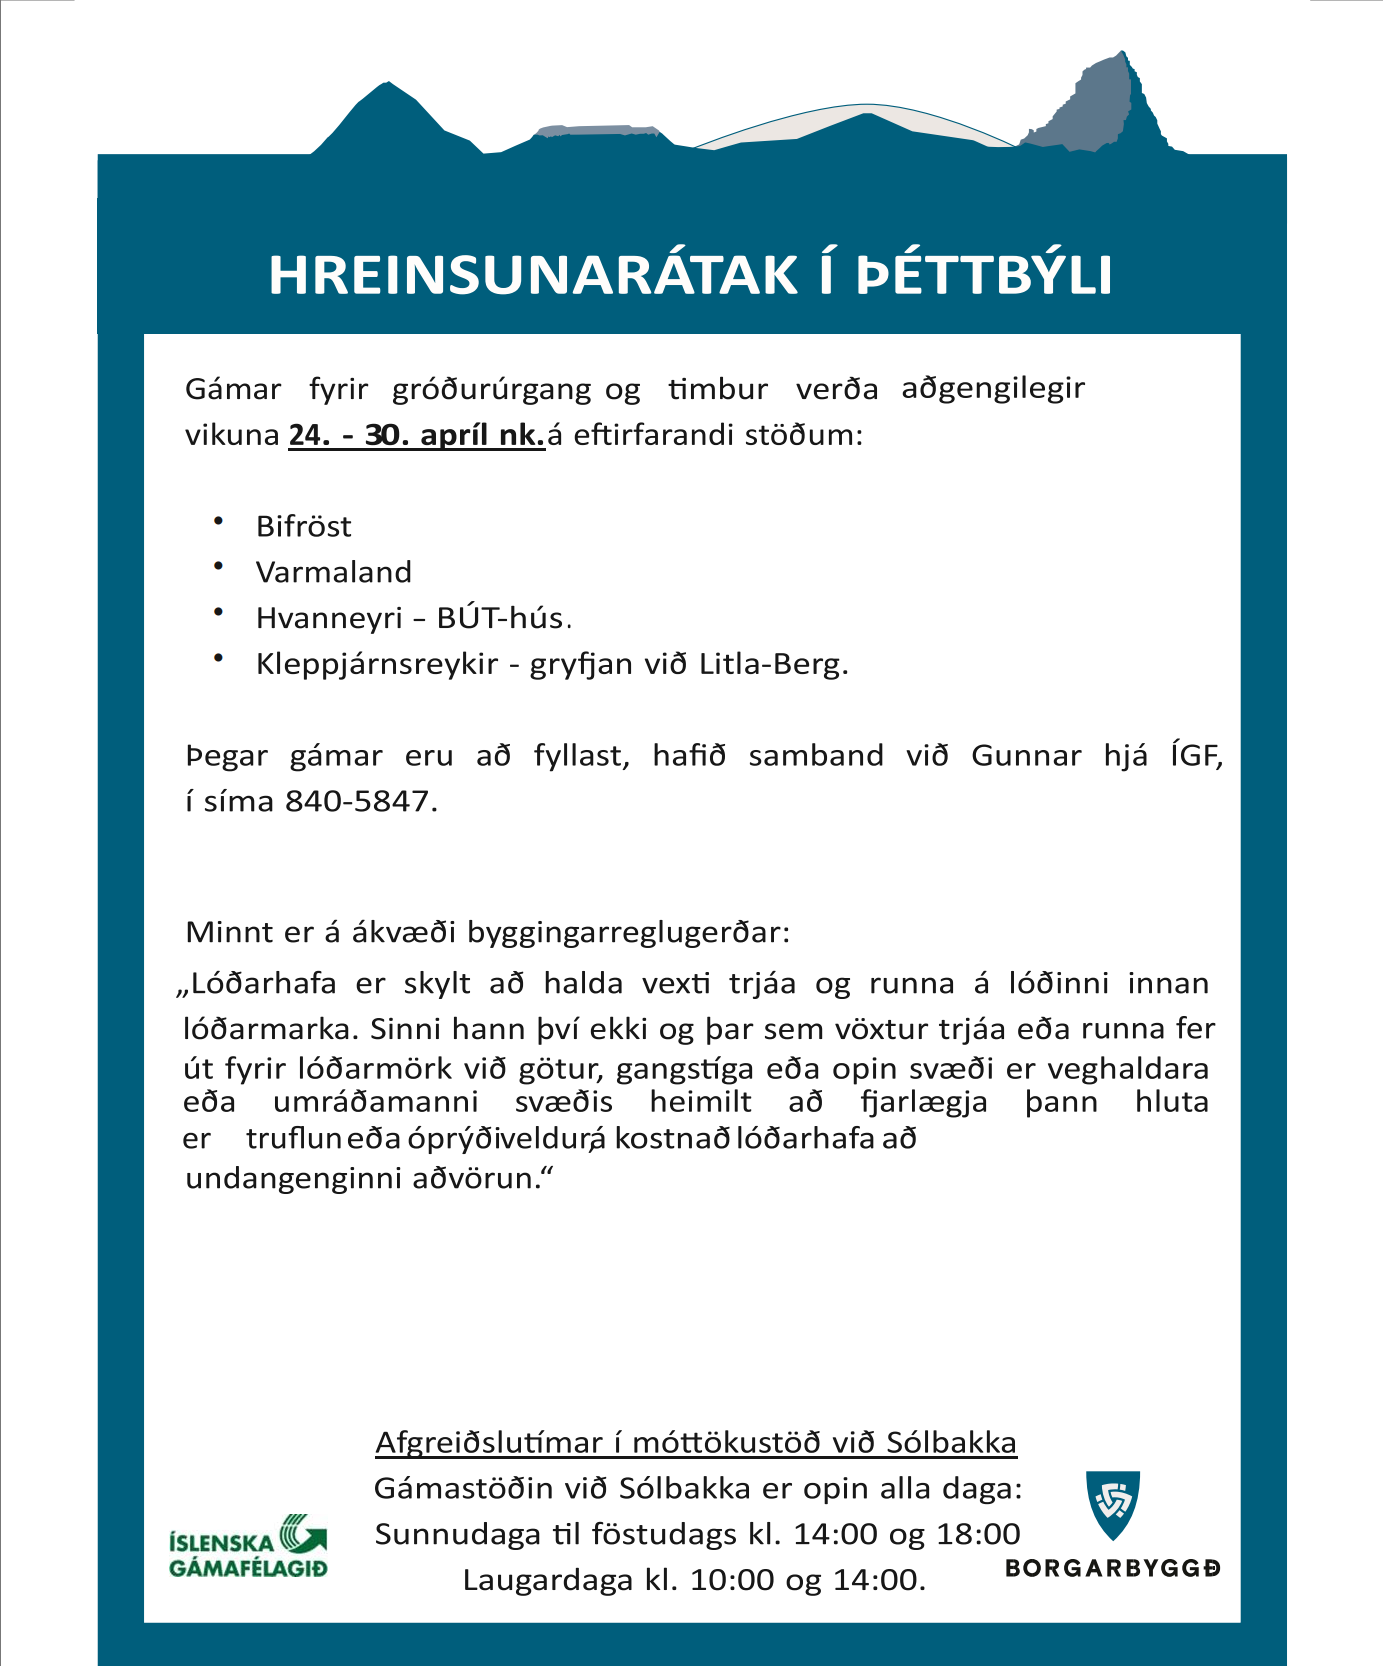 Featured image for “Hreinsunarátak í þéttbýli”